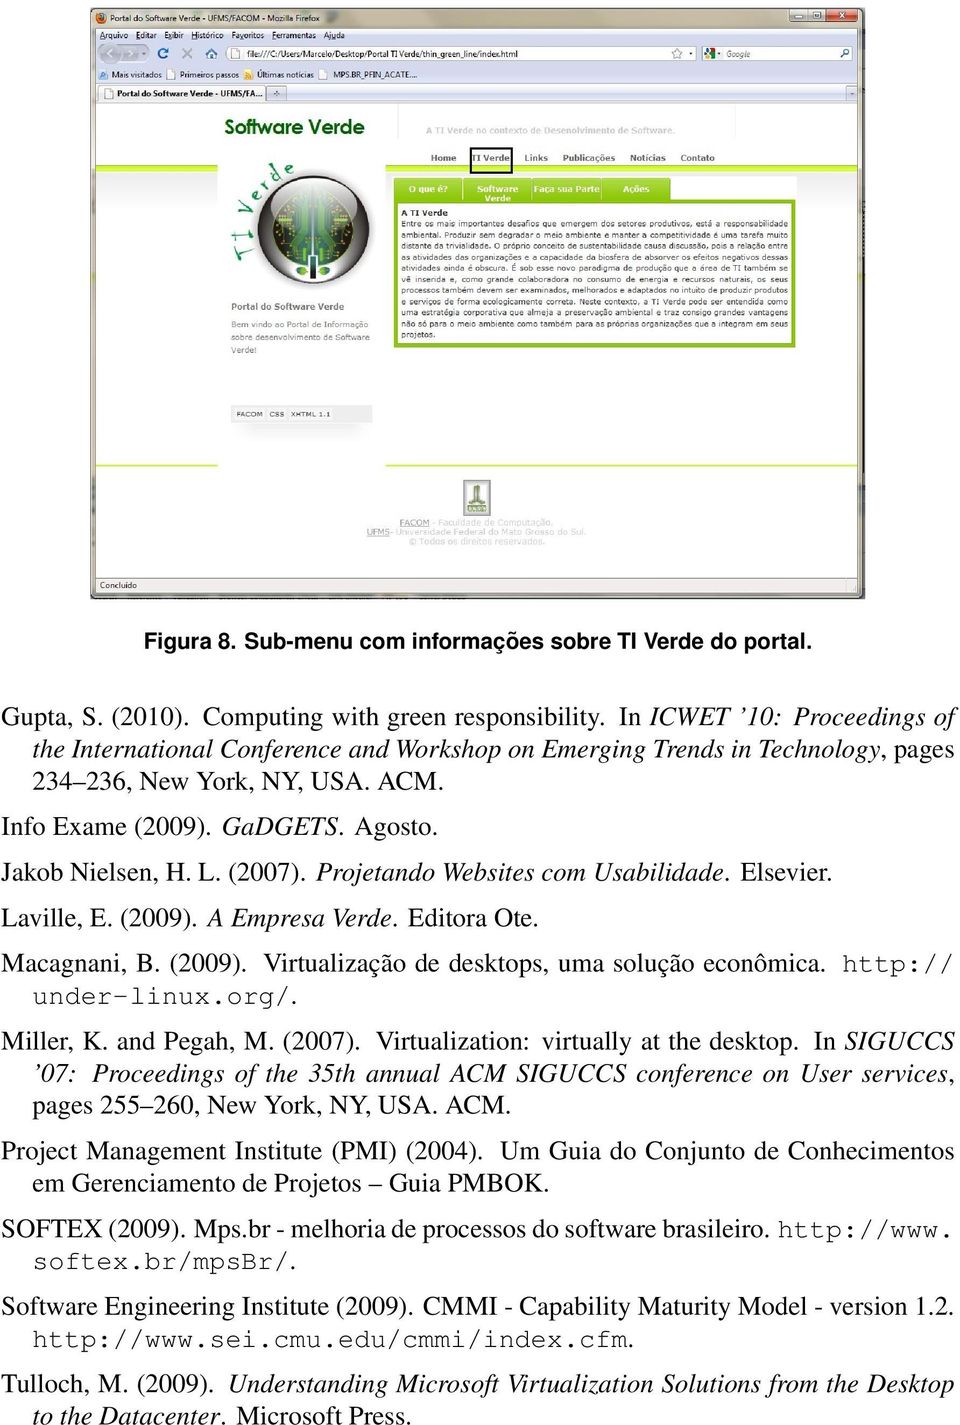 (2007). Projetando Websites com Usabilidade. Elsevier. Laville, E. (2009). A Empresa Verde. Editora Ote. Macagnani, B. (2009). Virtualização de desktops, uma solução econômica. http:// under-linux.